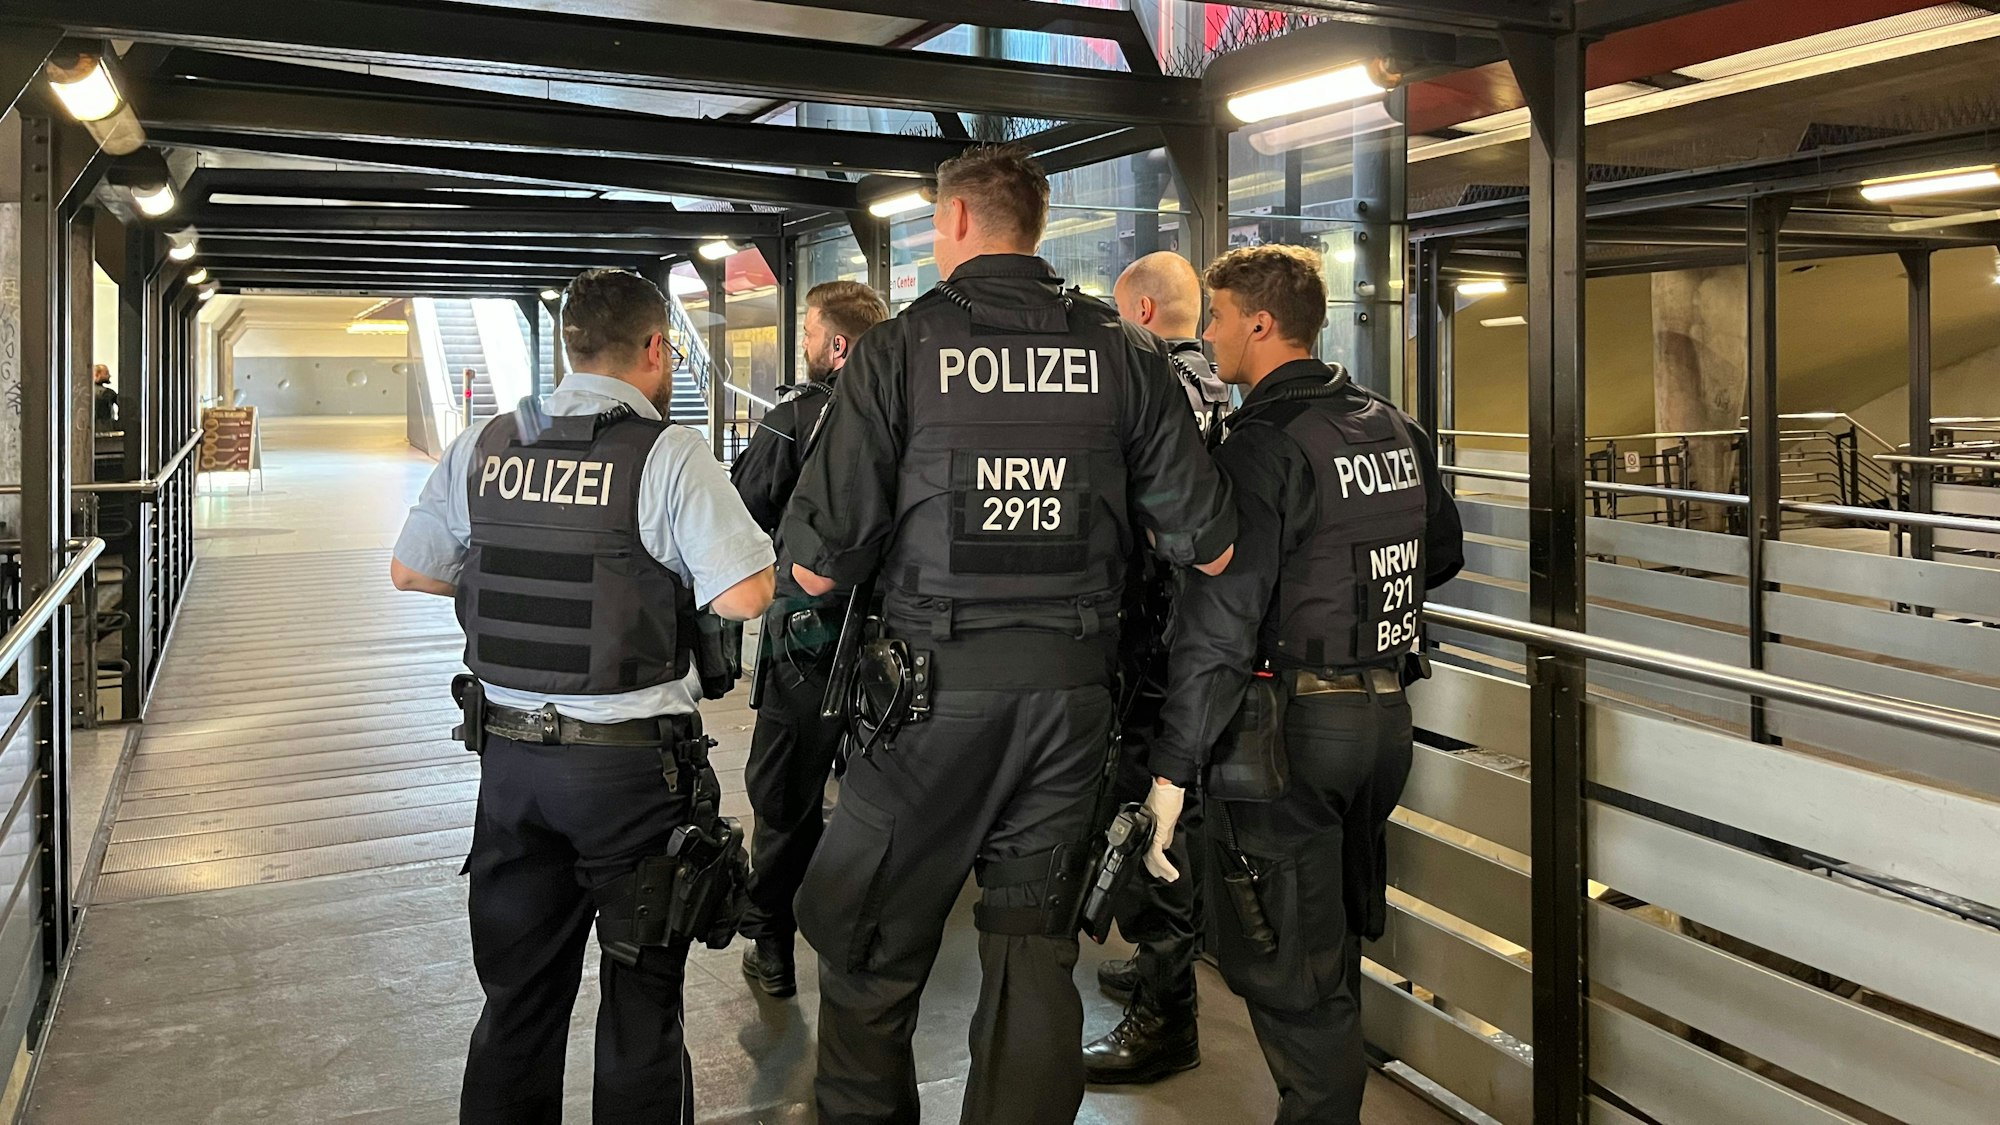 Schon vorigen Sommer hatte die Polizei intensiv rund um den Wiener Platz in Mülheim verdächtige Personen kontrolliert. Nun wurden die Kontrollen ausgeweitet.